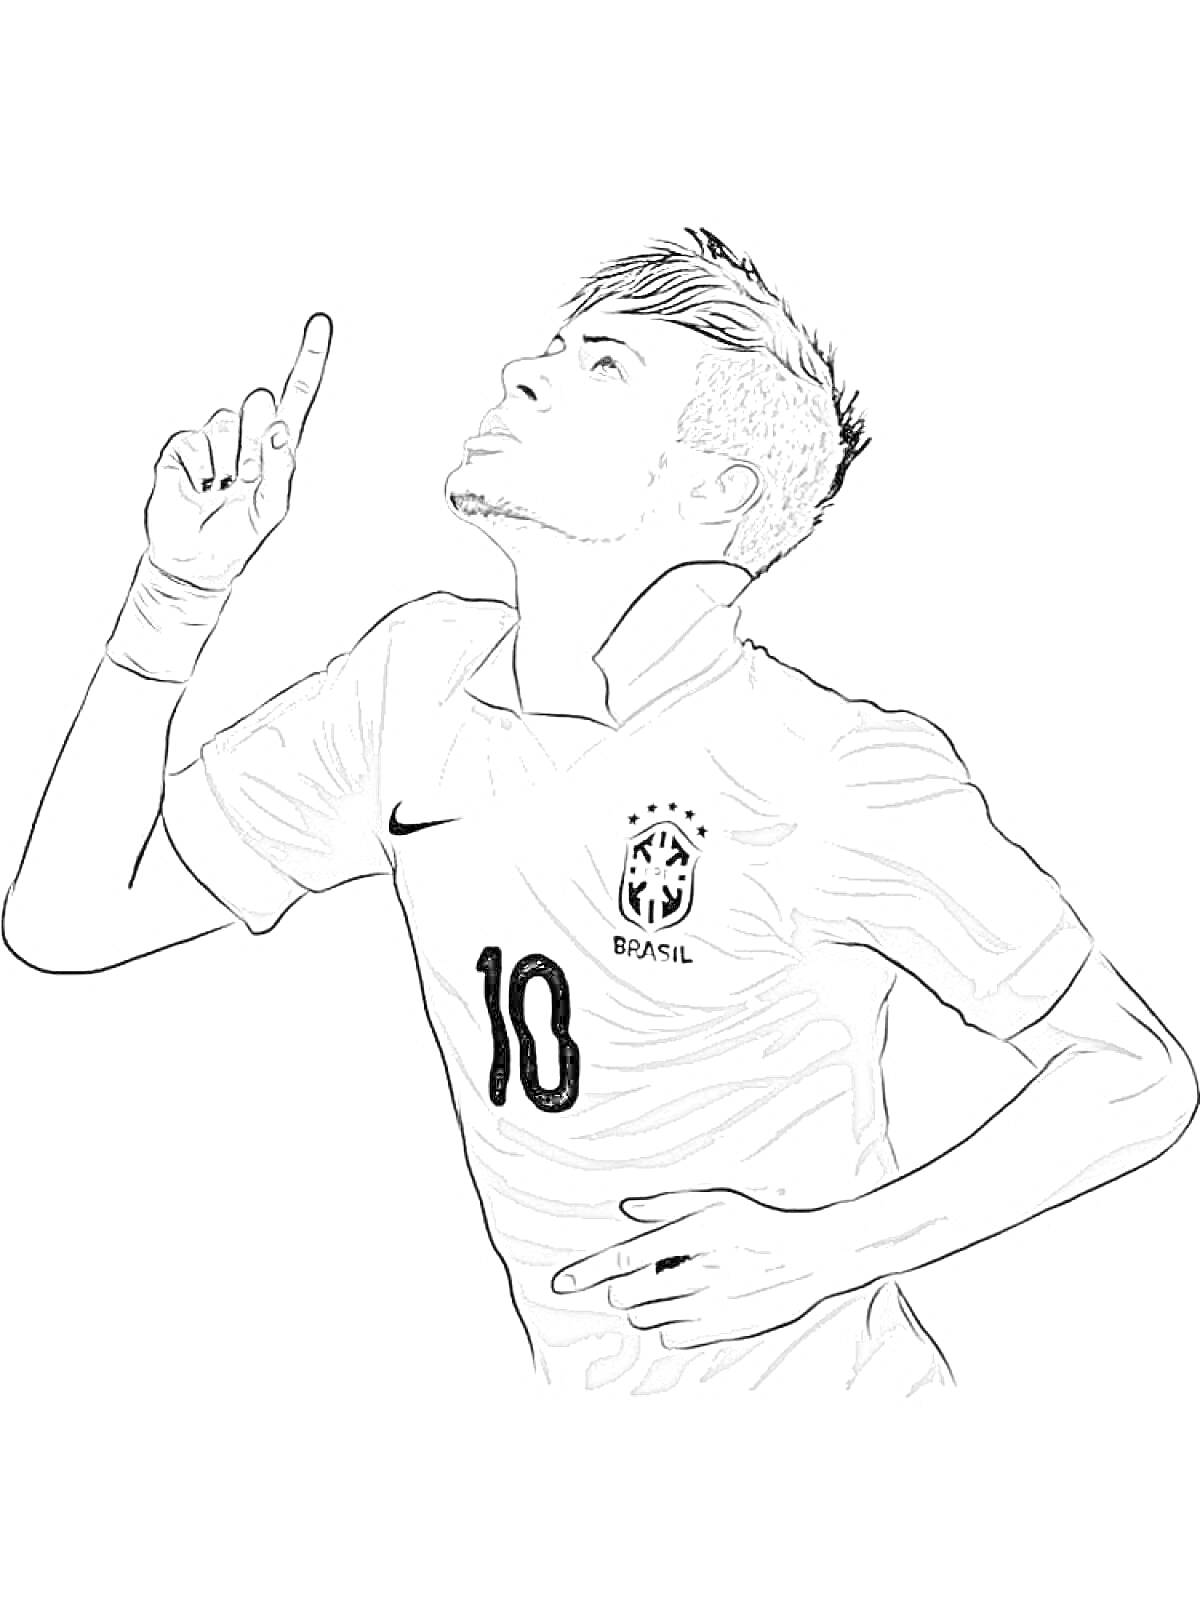 Раскраска Футболист с номером 10 на футболке, поднимающий палец вверх